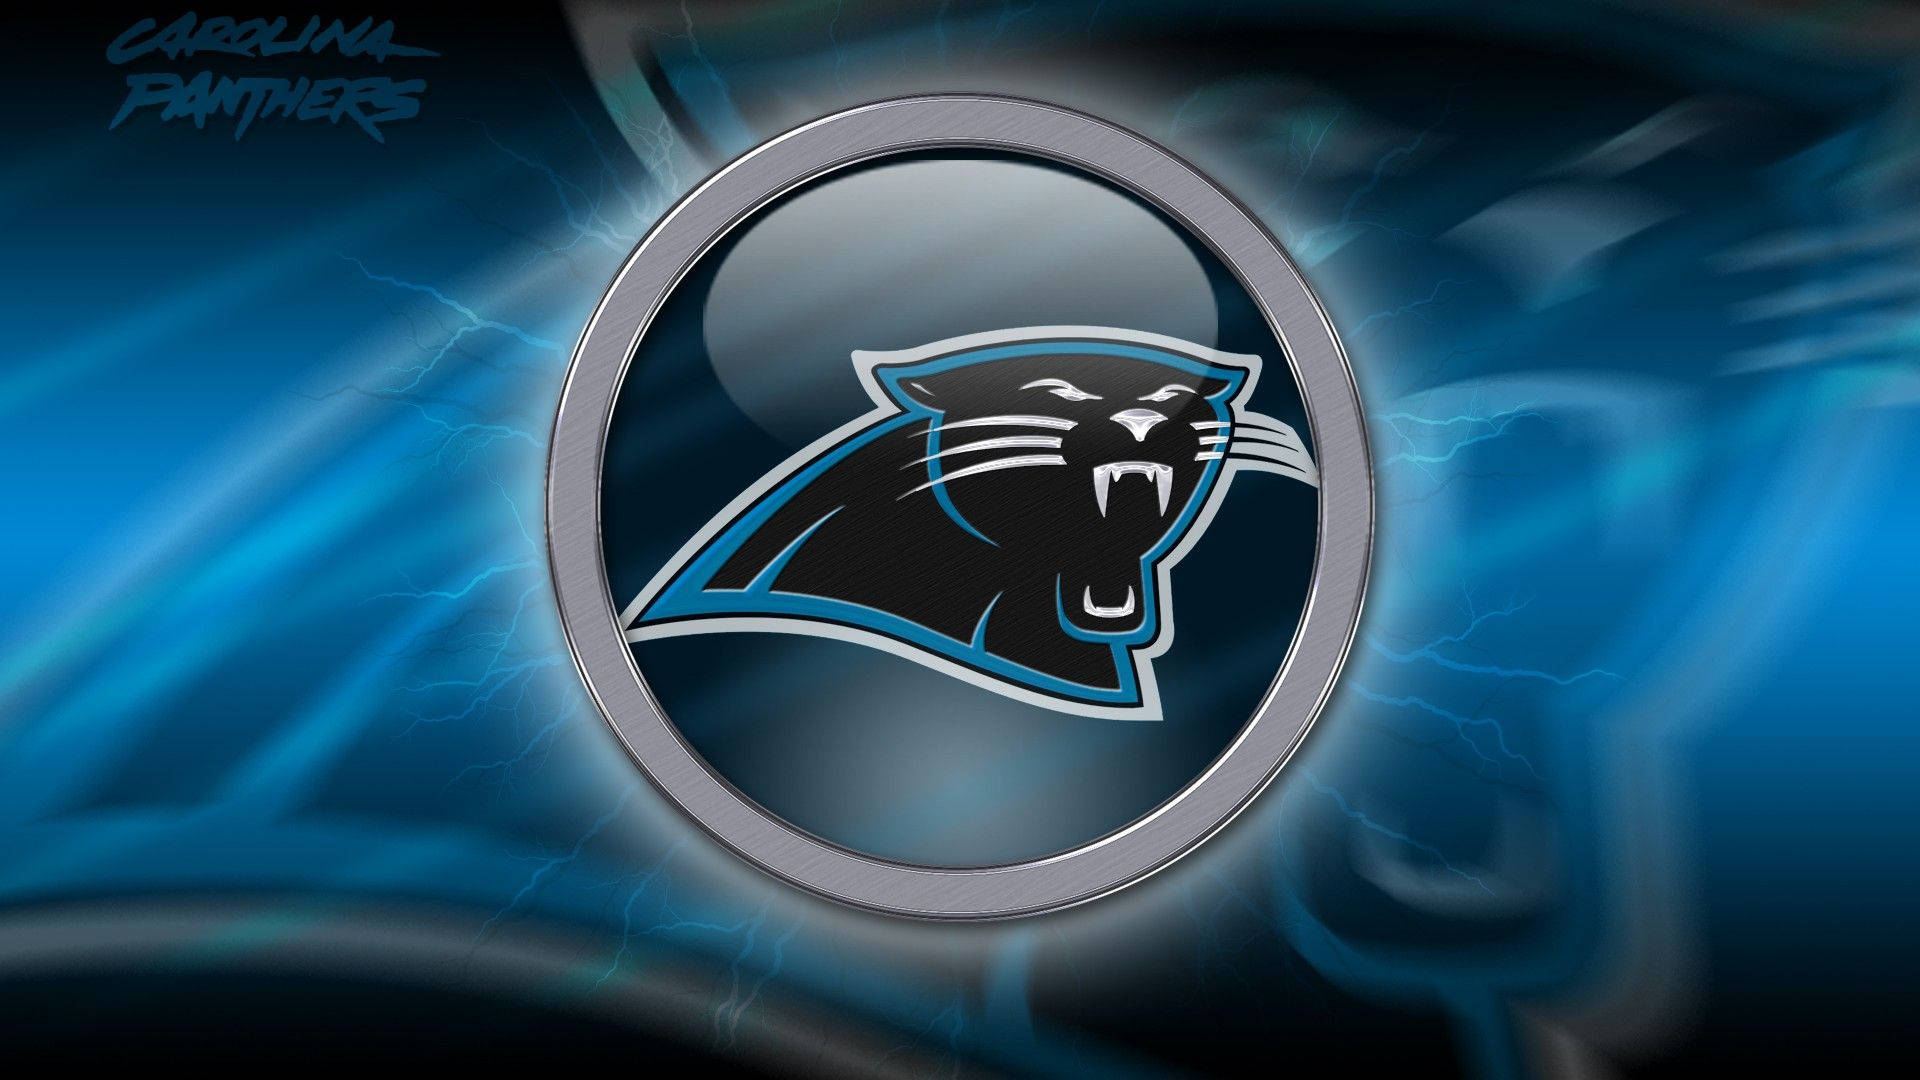 Carolina Panthers On Circular Logo Background